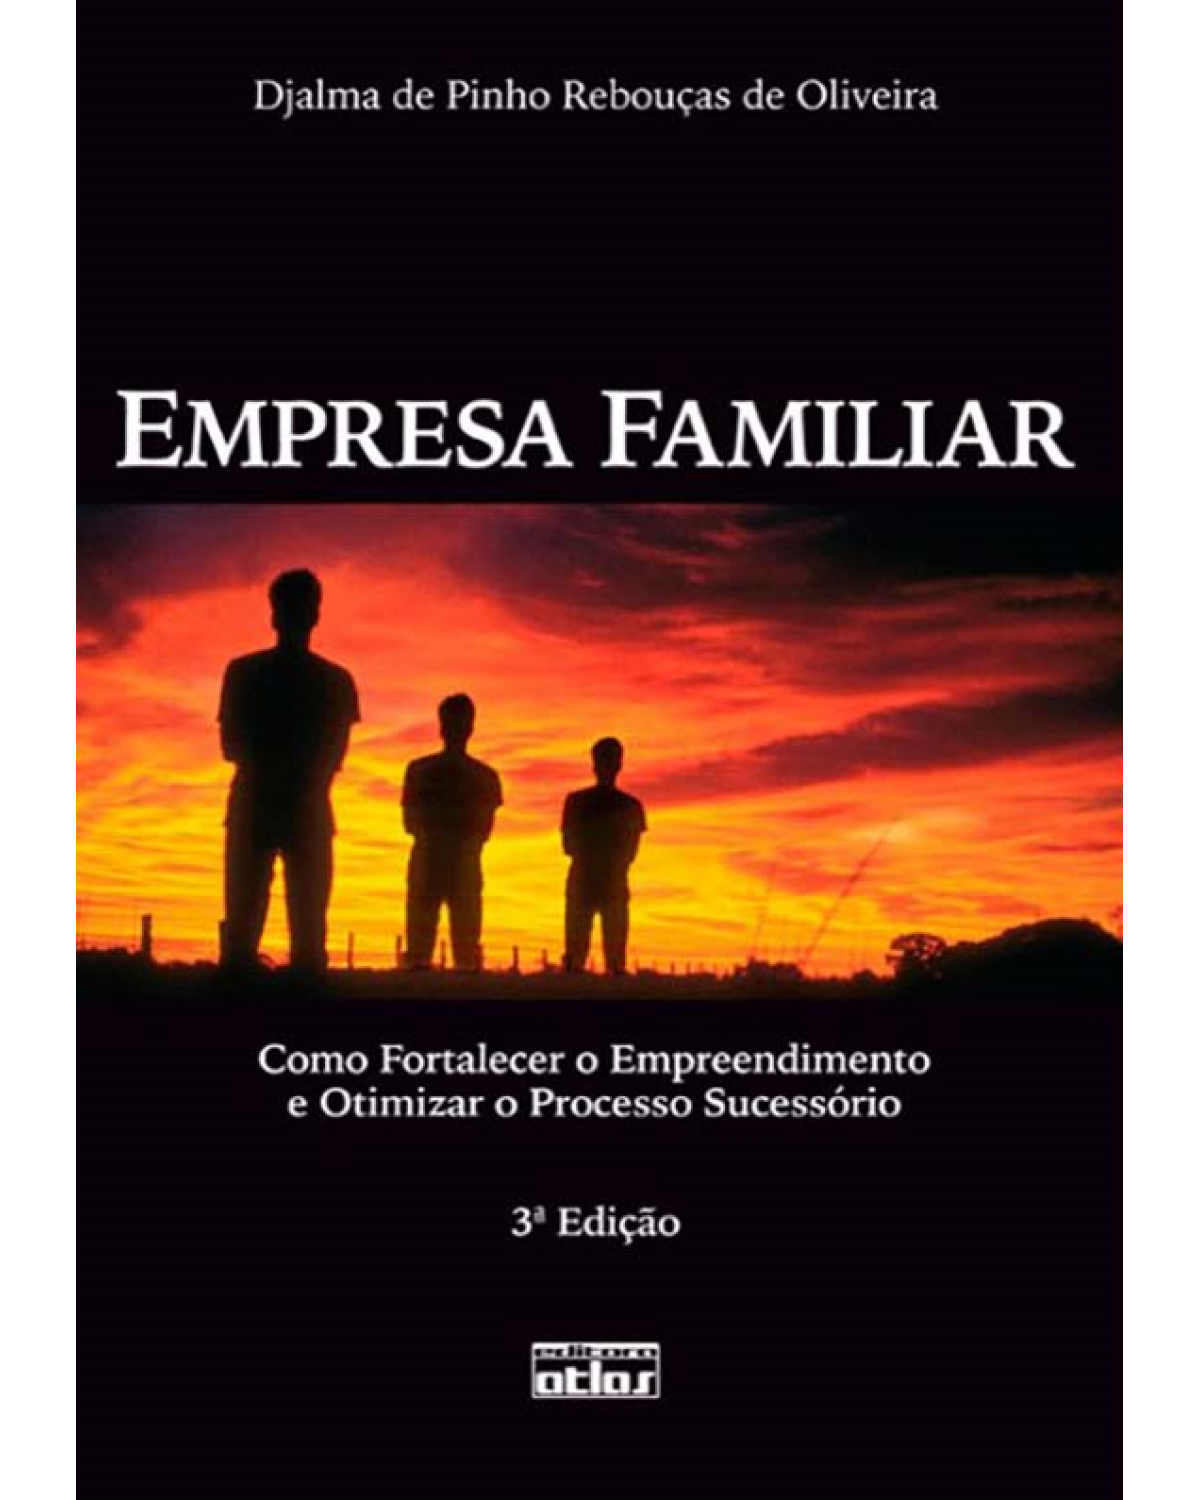 Empresa familiar - Como fortalecer o empreendimento e otimizar o processo sucessório - 3ª Edição | 2010